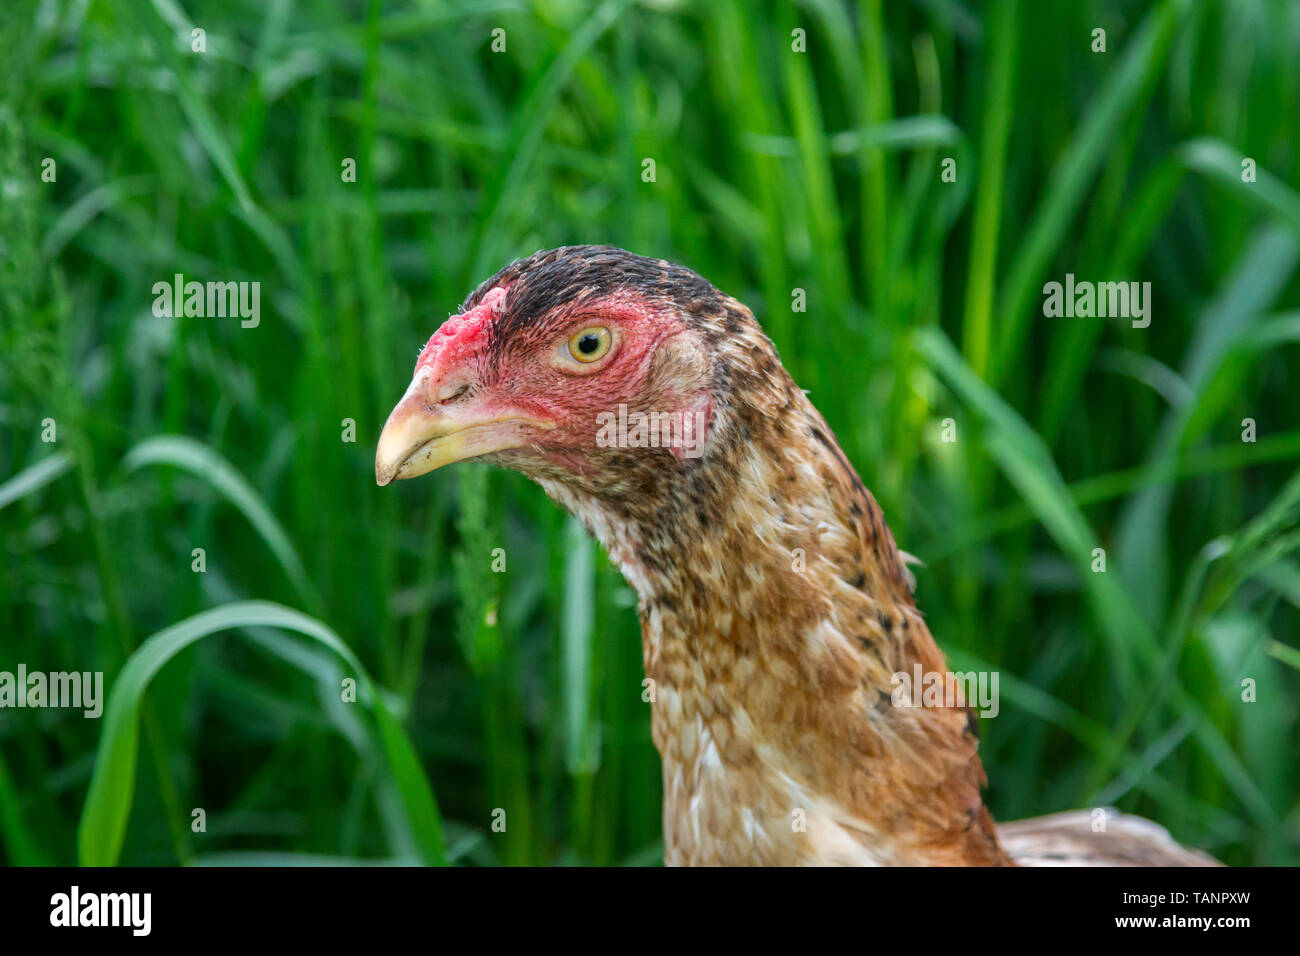 Retrato de un intervalo libre Shamo combates pollo gallina Foto de stock